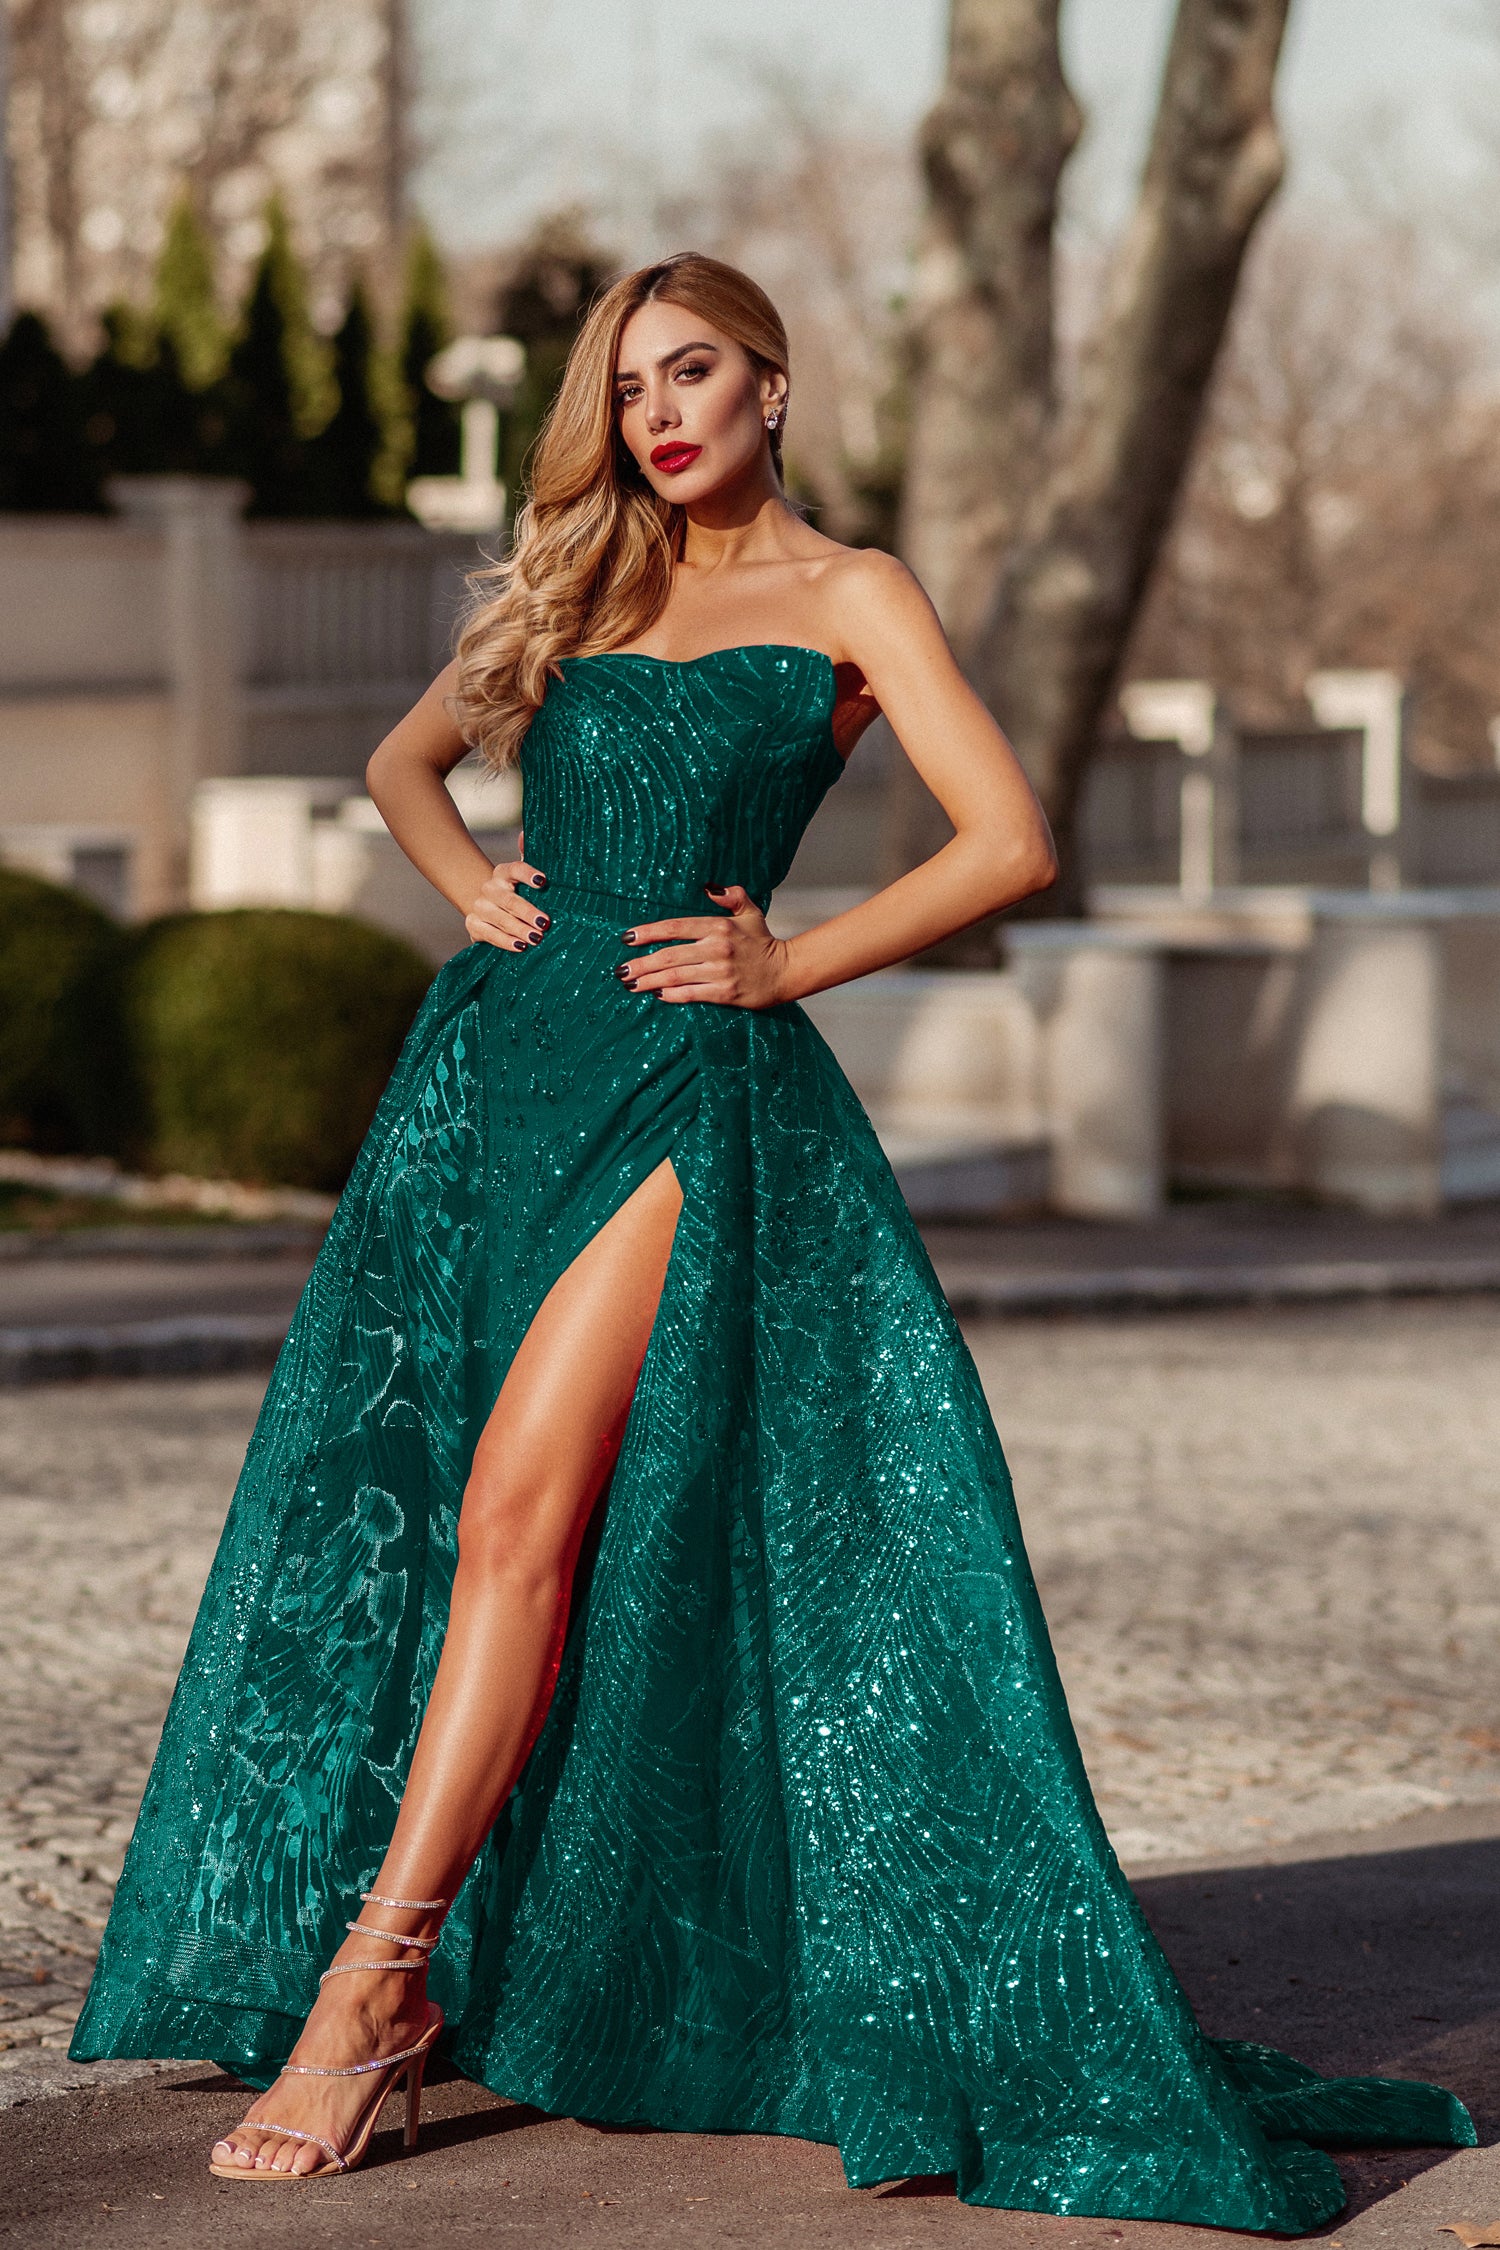 gasformig Vedholdende Vittig Tina Holly Couture Designer TK310 Emerald Green Glitter Formal Dress w –  One Honey